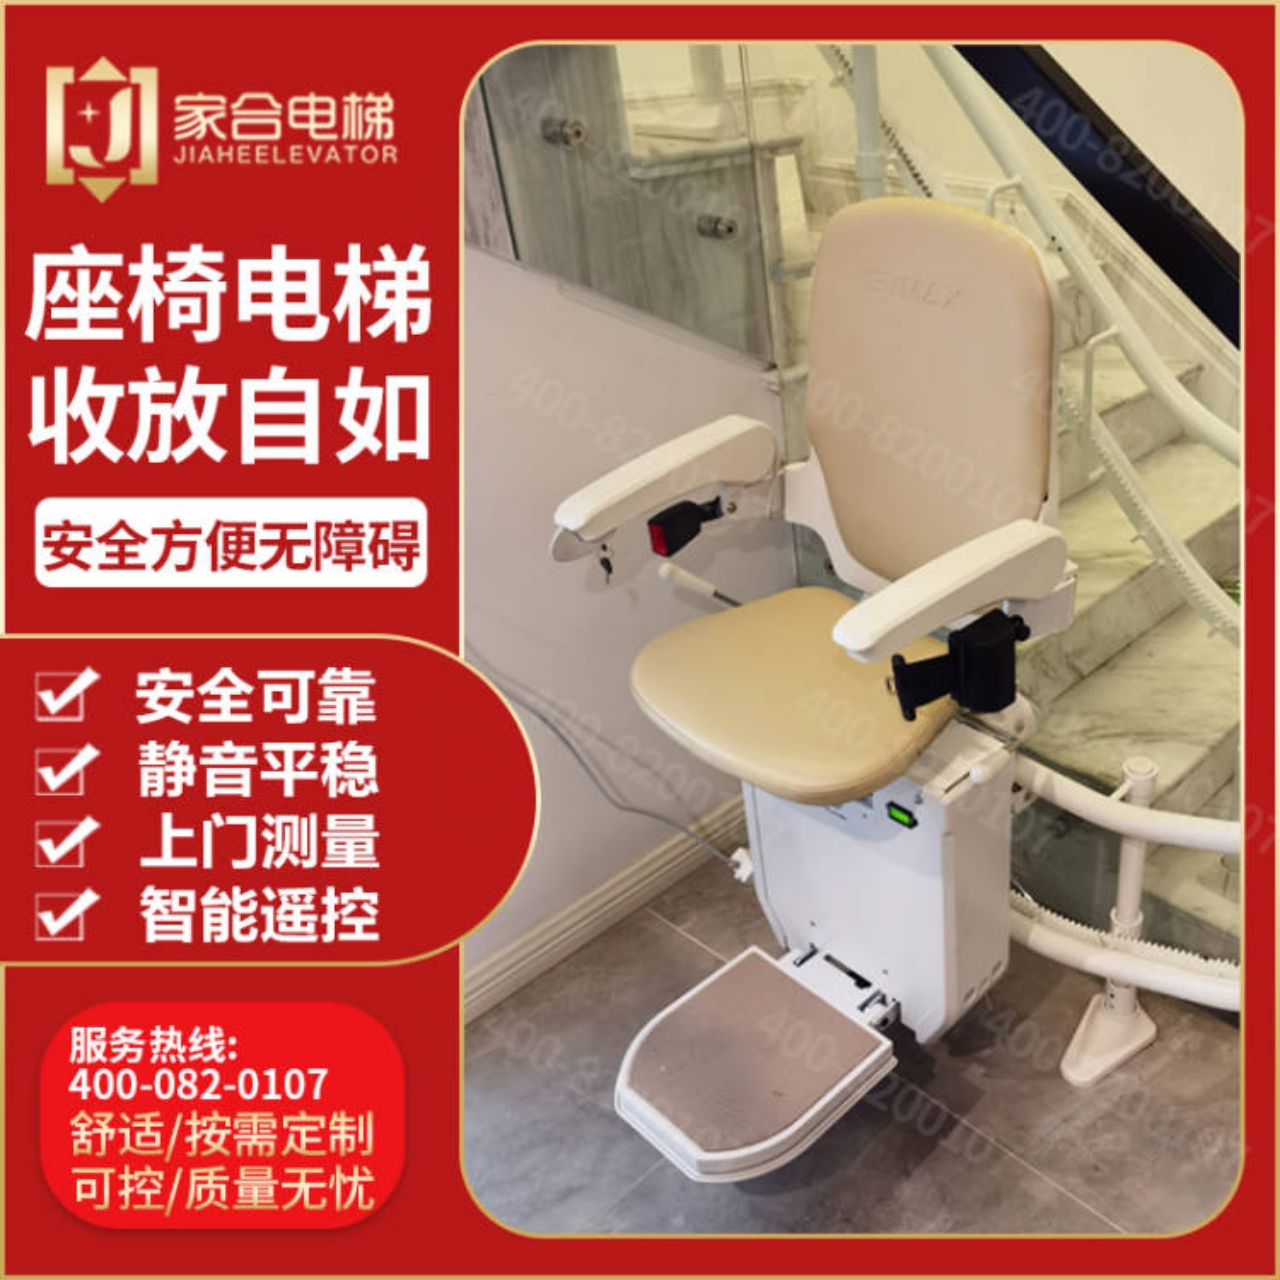 楼道曲线座椅式电梯老人家用上下楼梯升降椅爬楼机北京上海全国